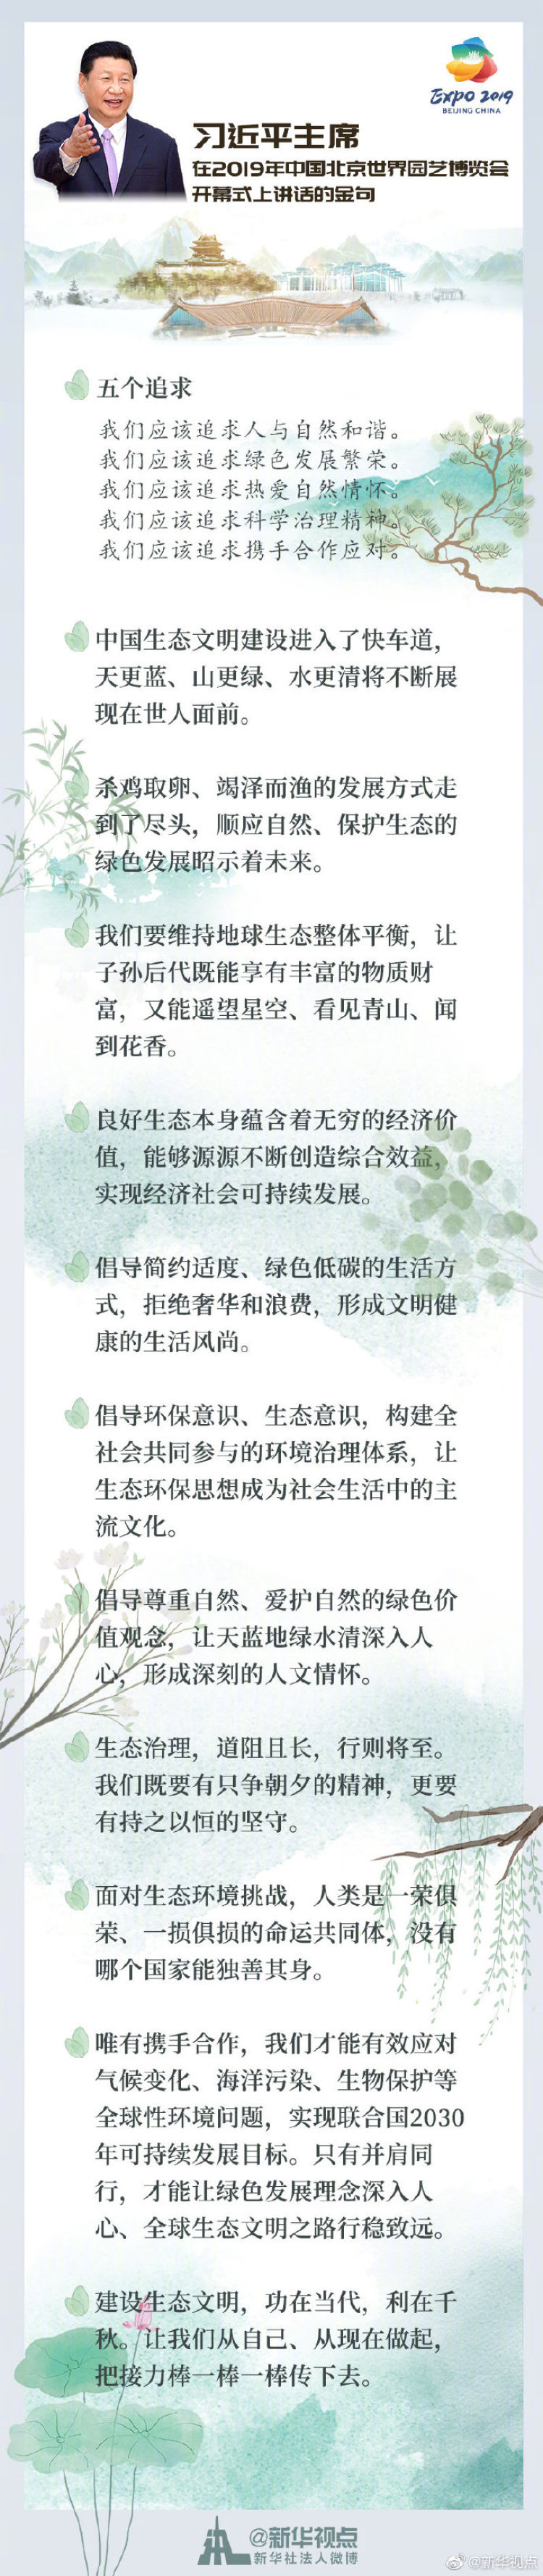 习近平在2019年中国北京世界园艺博览会开幕式上讲话的金句